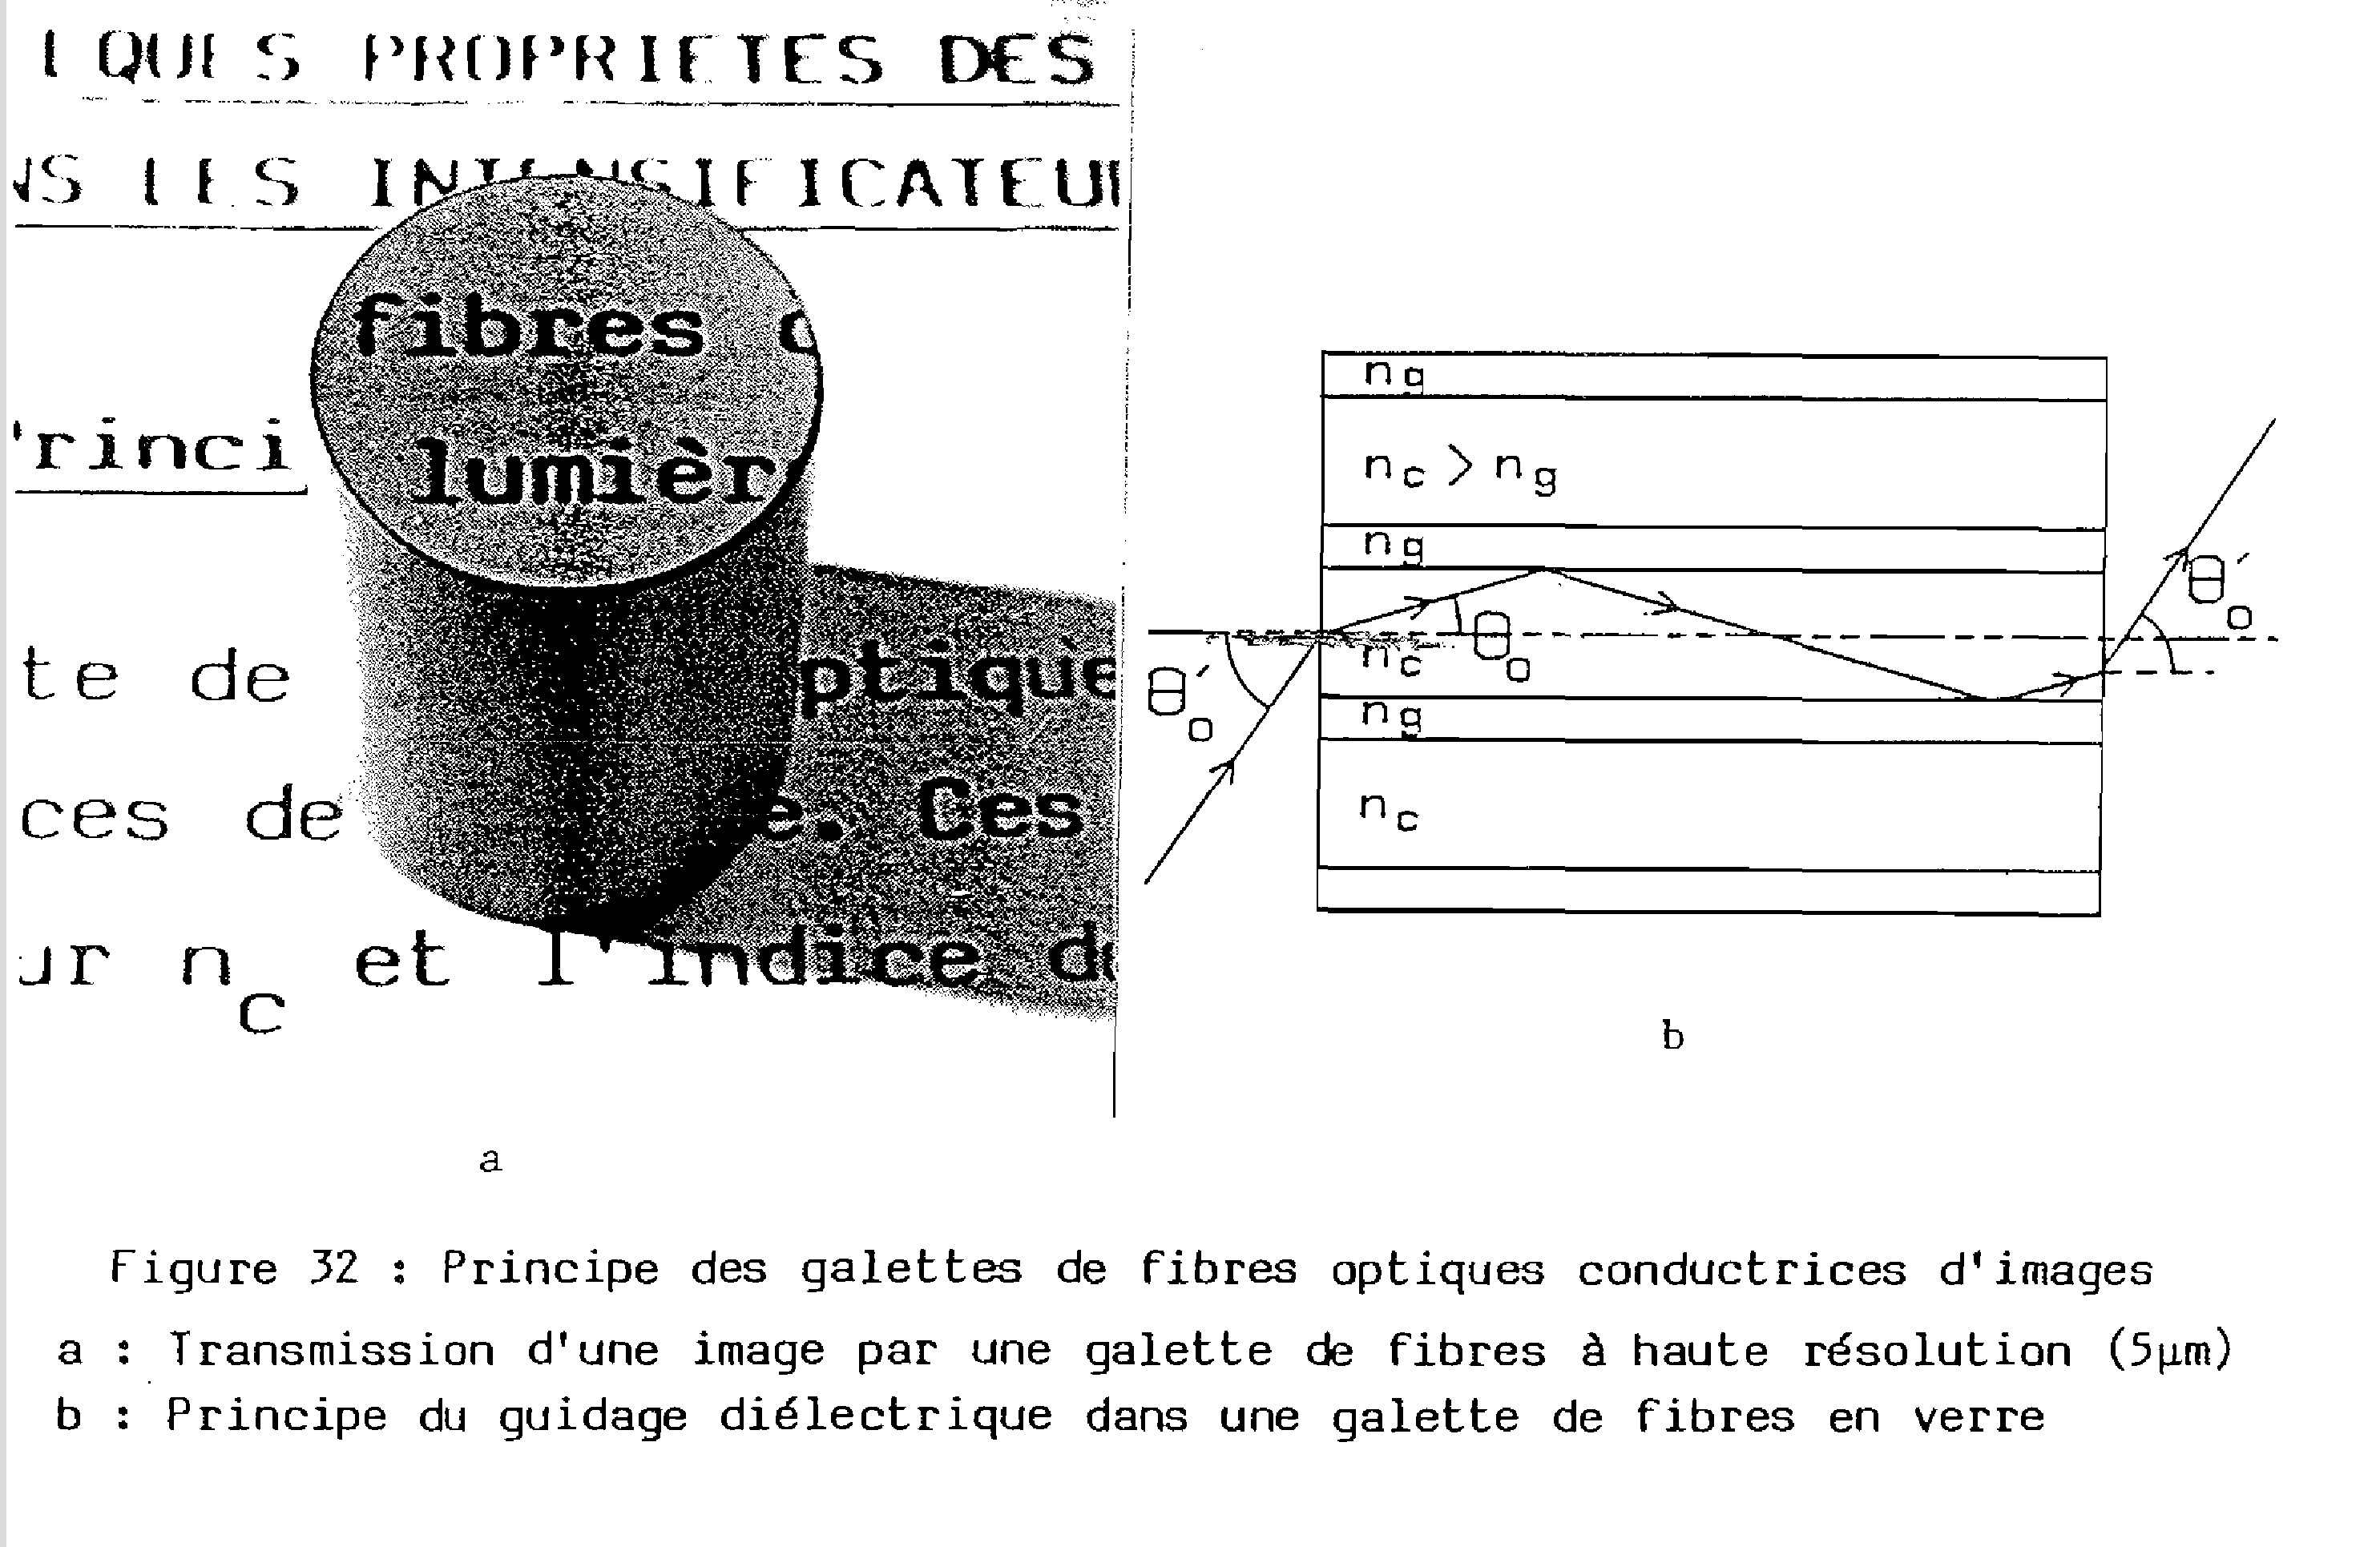 ECypRd4nYNW_bigler1986-page-95-plaque-de-fibres-fig32.jpg